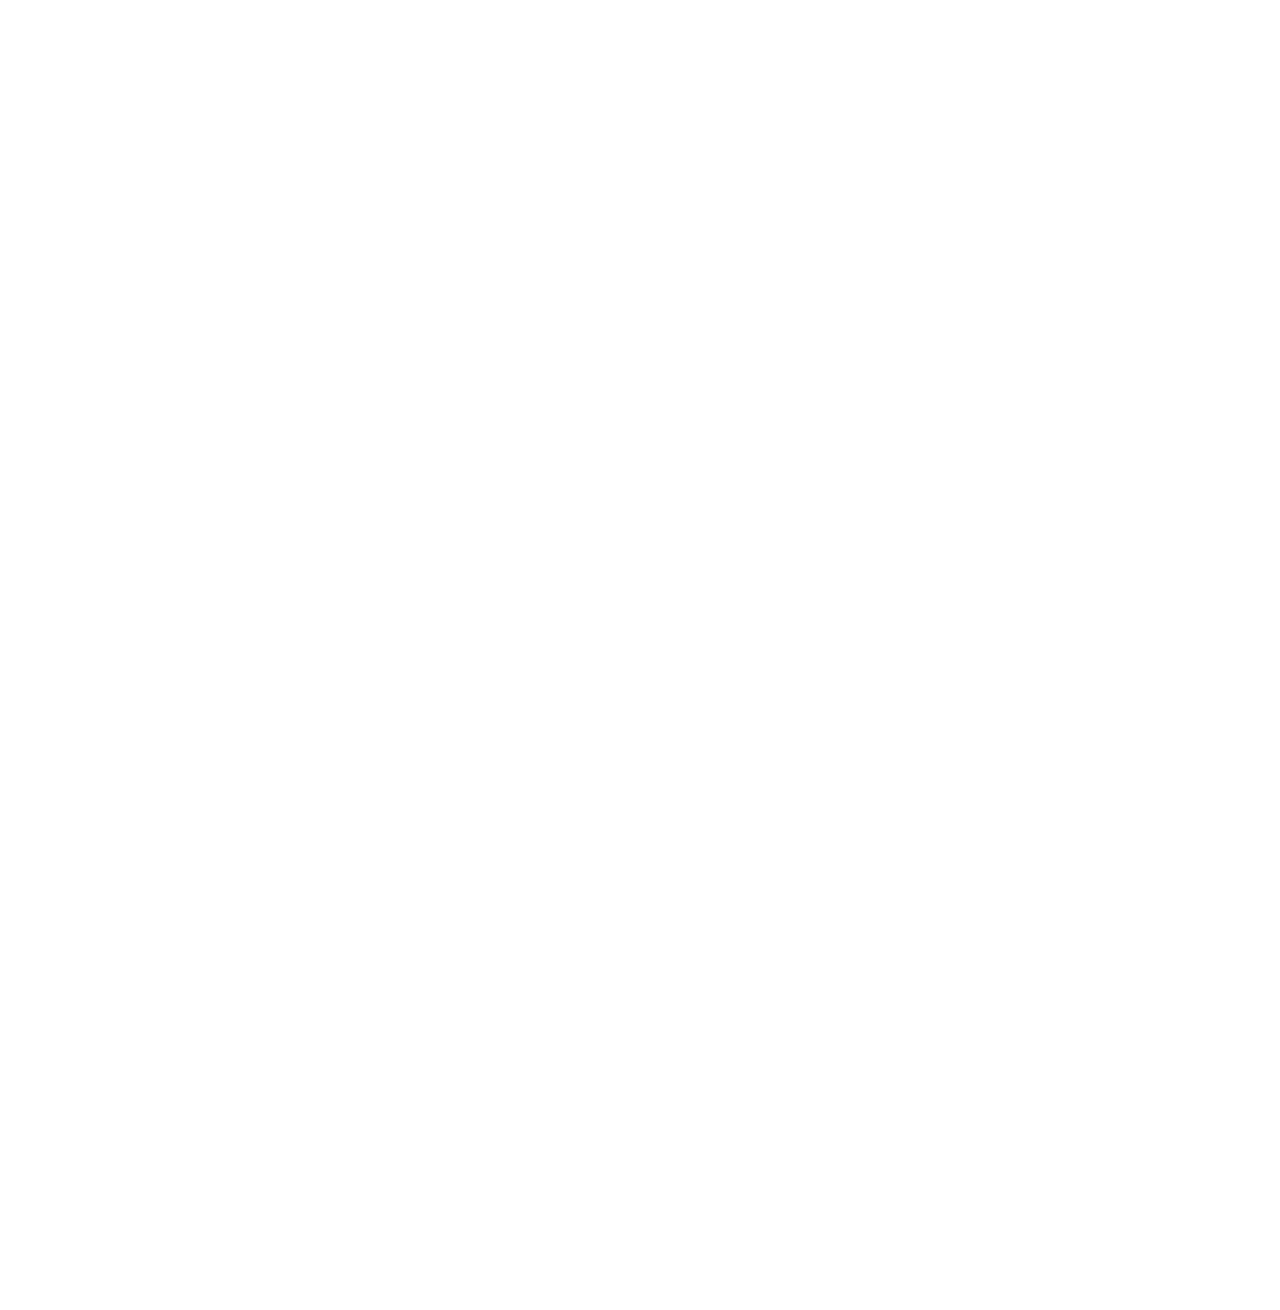 Darlehensgeber für gleichwertigen Wohnraum